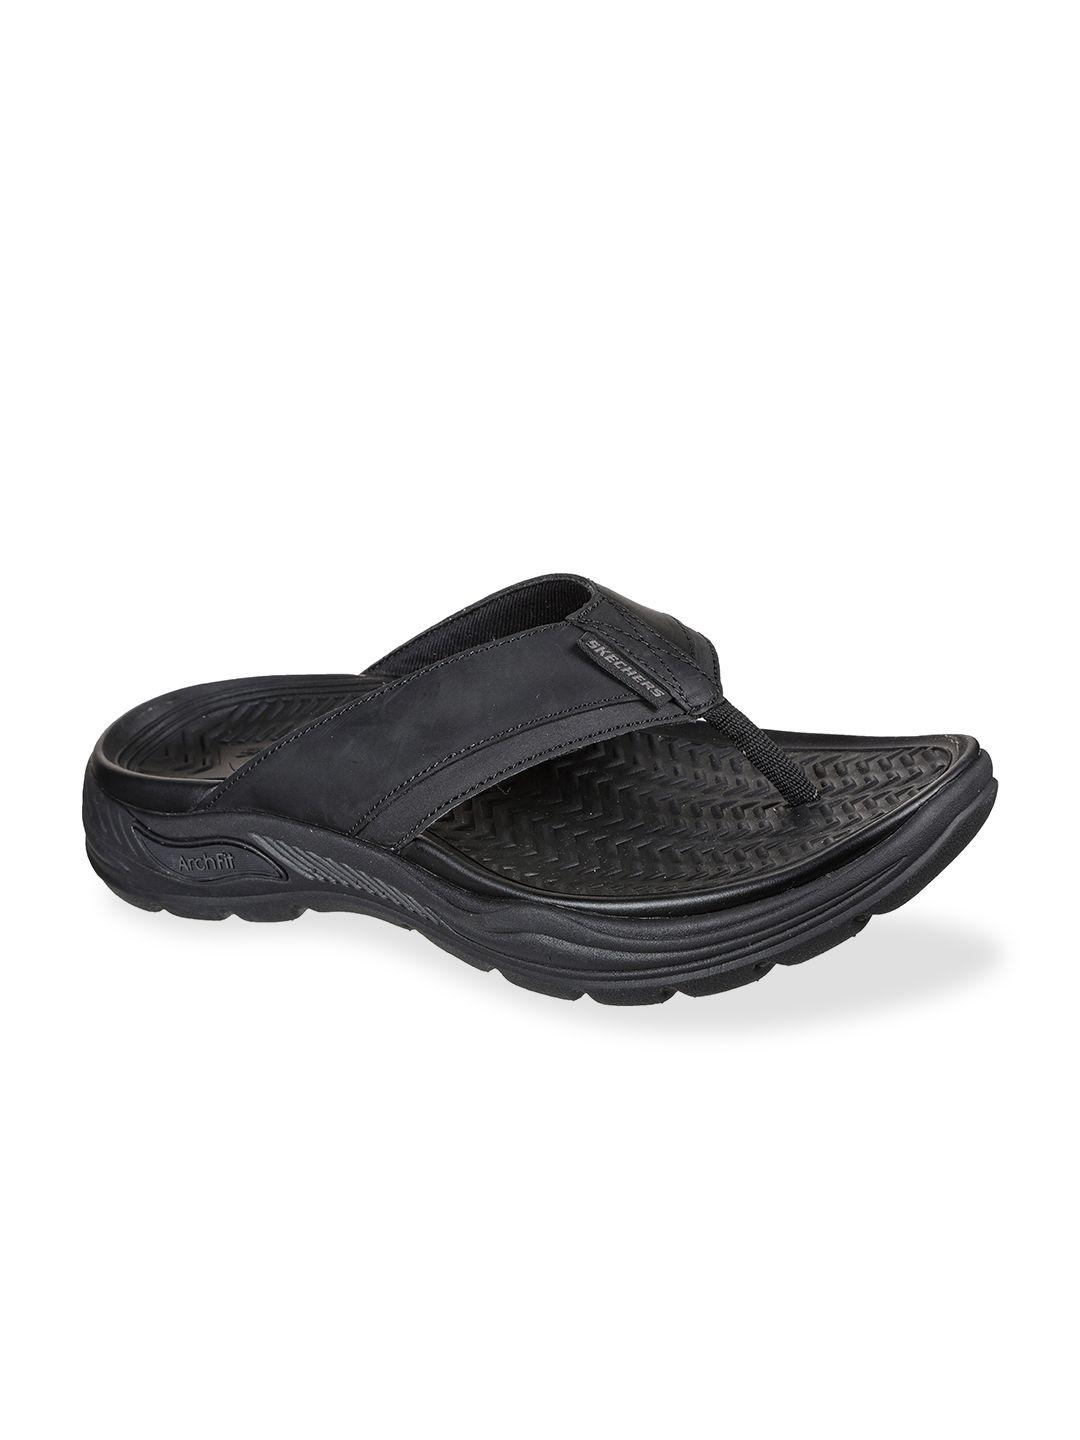 skechers men black solid comfort sandals